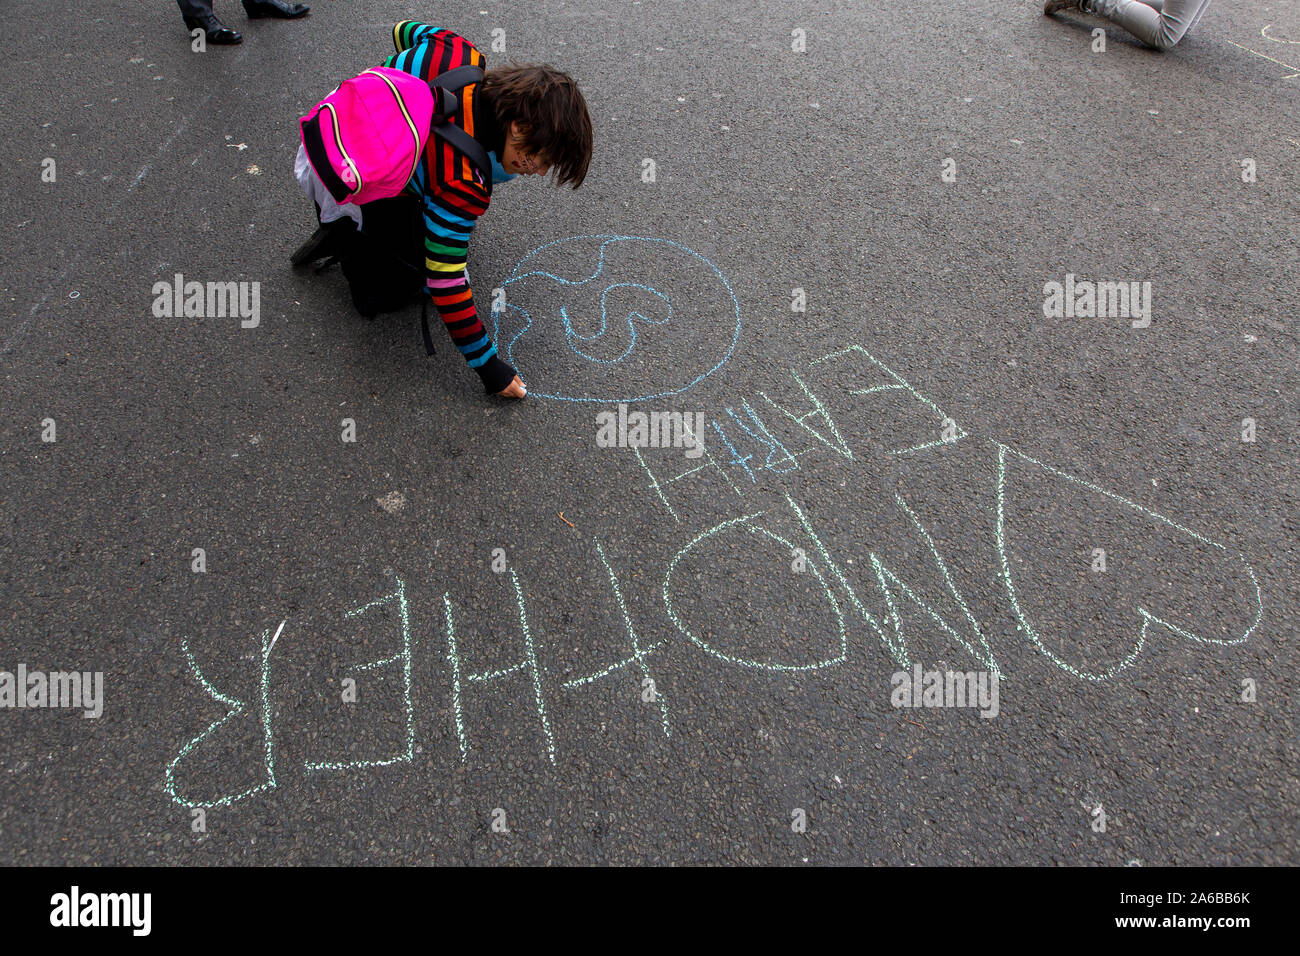 Londra, 10 ottobre 2019, una ragazza scrive un messaggio sulla strada durante la ribellione di estinzione di dimostrazione e di occupazione di Trafalgar Square. Foto Stock